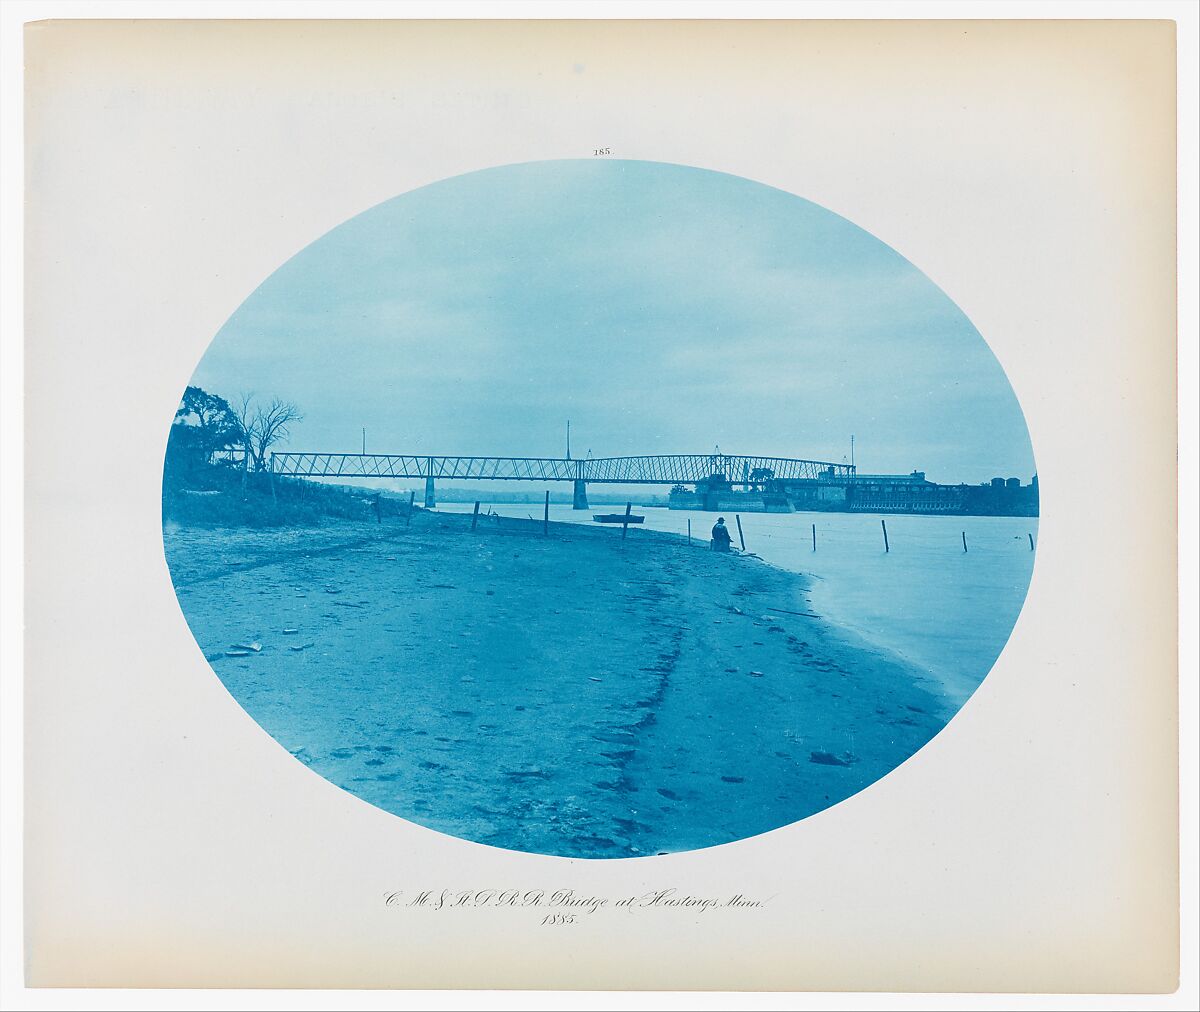 No. 185. Chicago, Milwaukee & St. Paul Rail Road Bridge at Hasting, Minnesota, Henry P. Bosse, Cyanotype